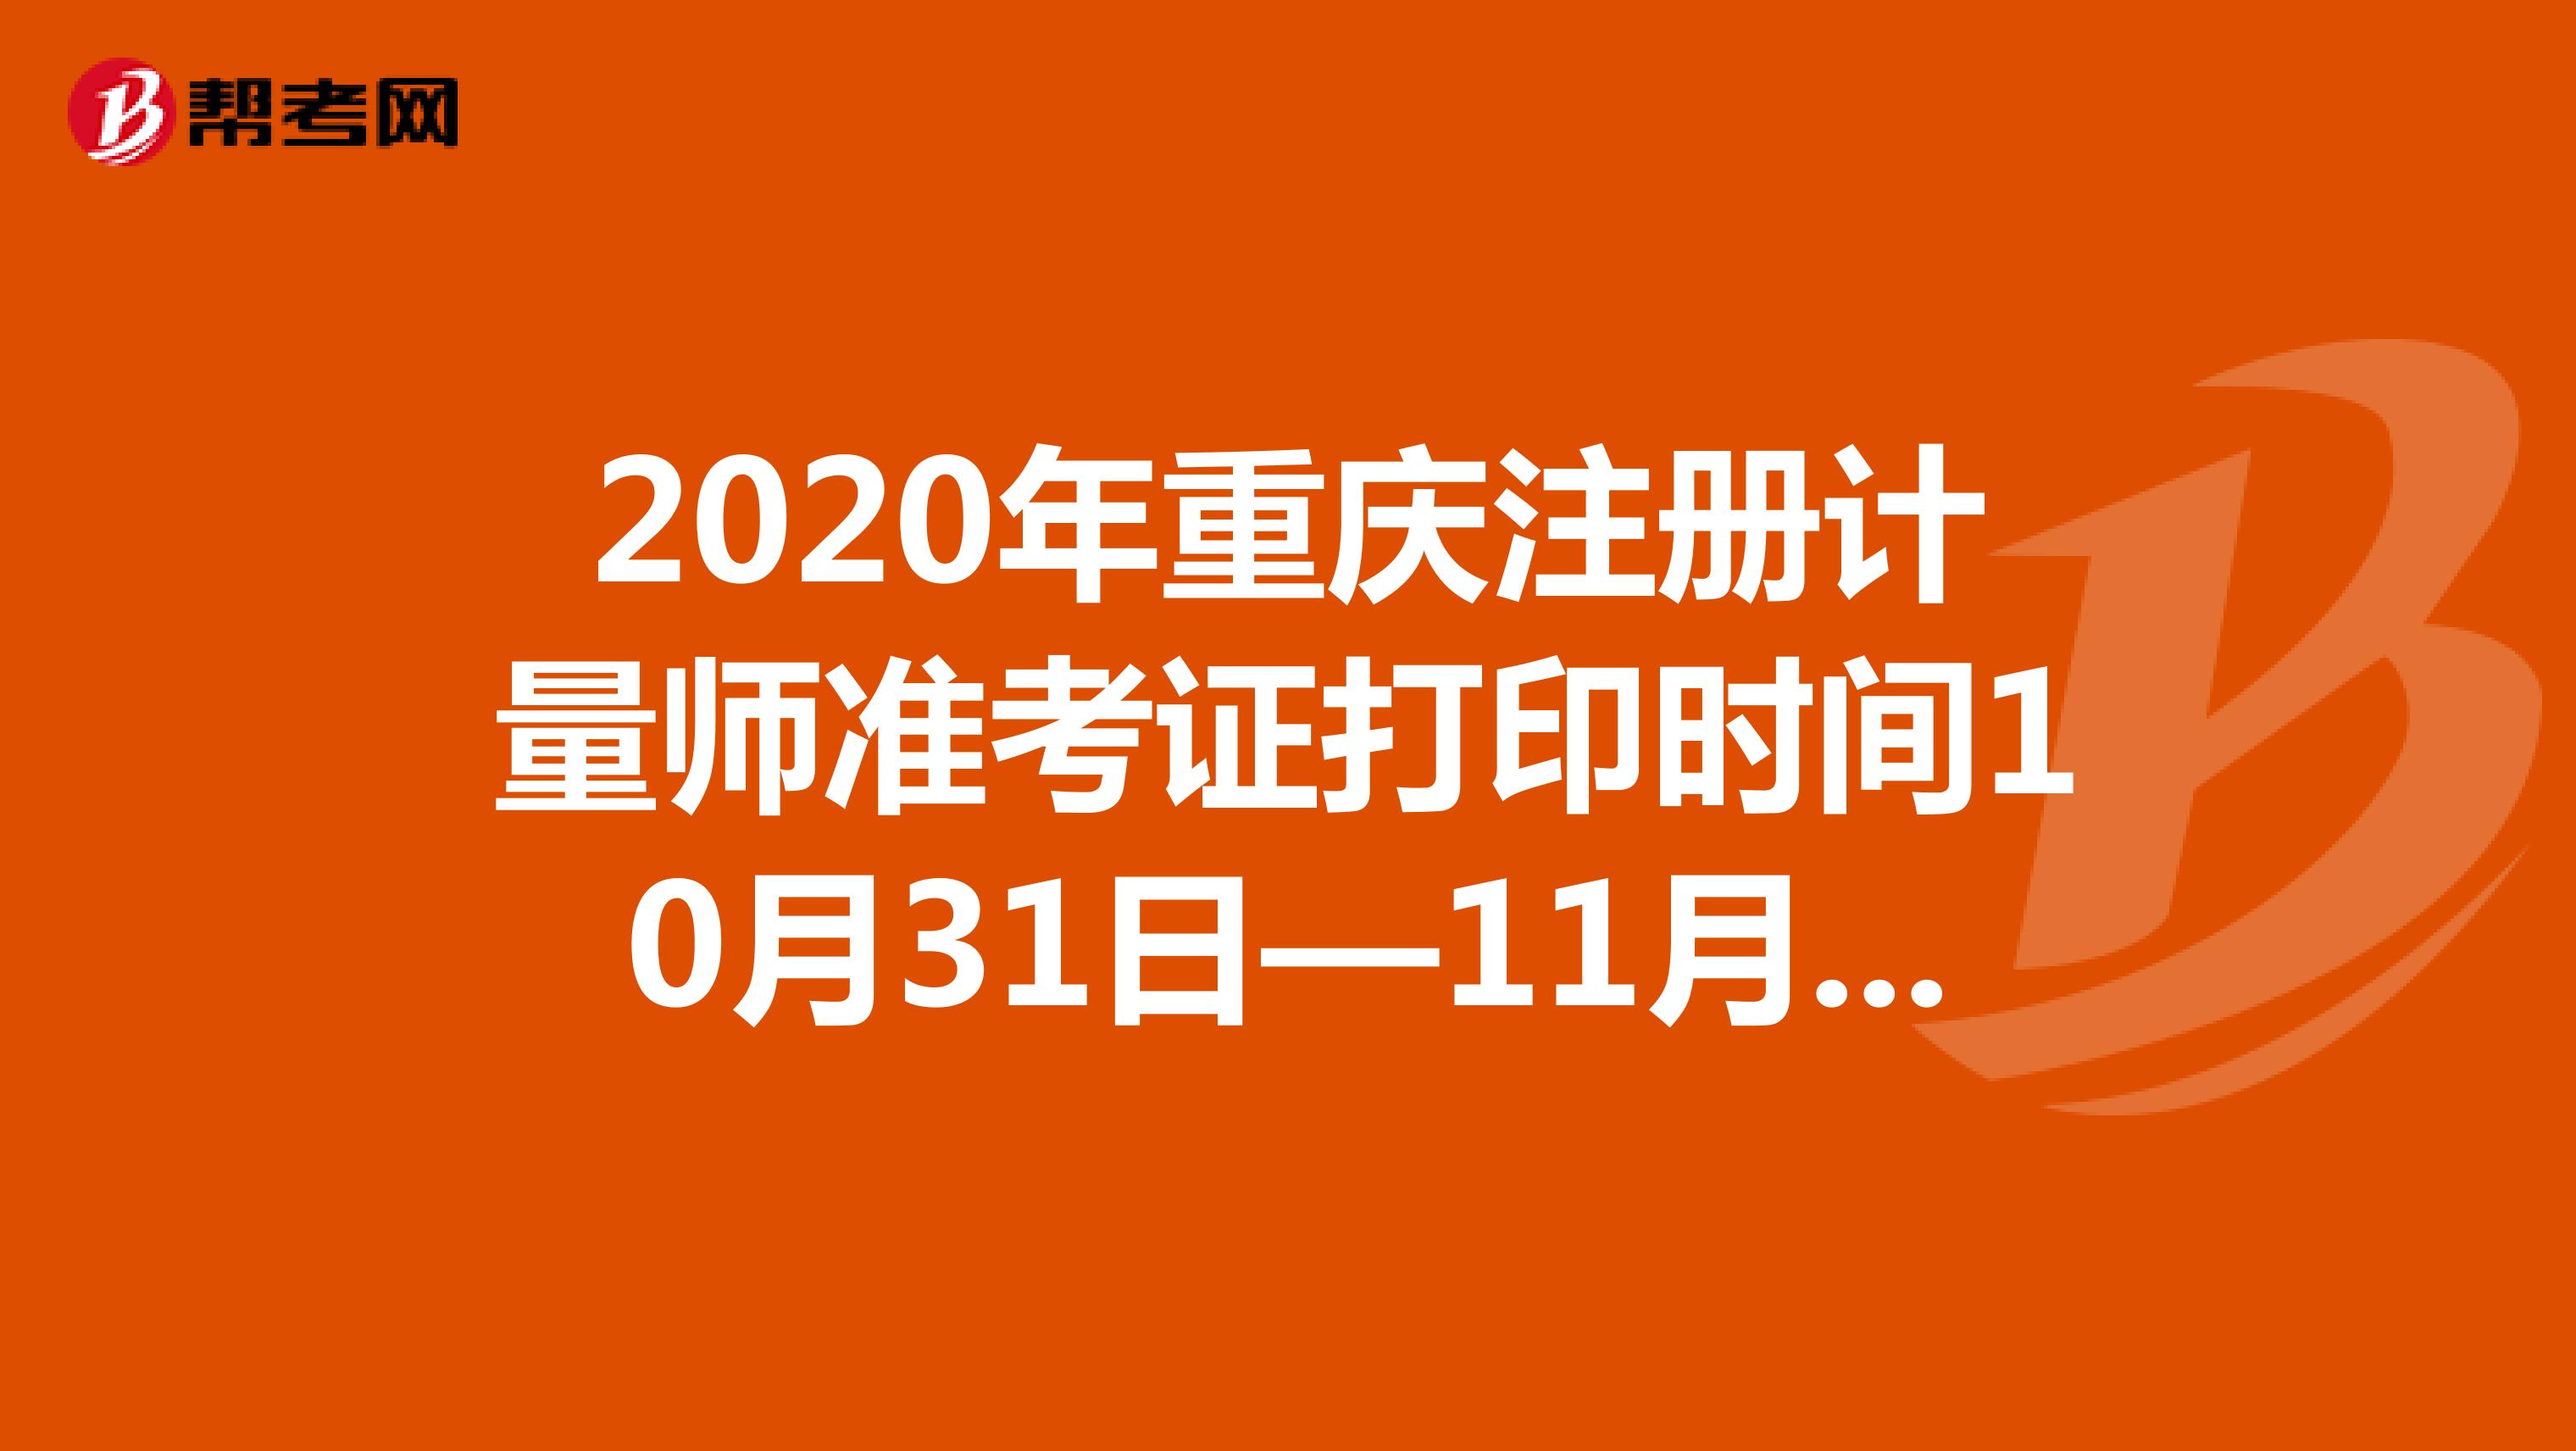 2020年重庆注册计量师准考证打印时间10月31日—11月6日